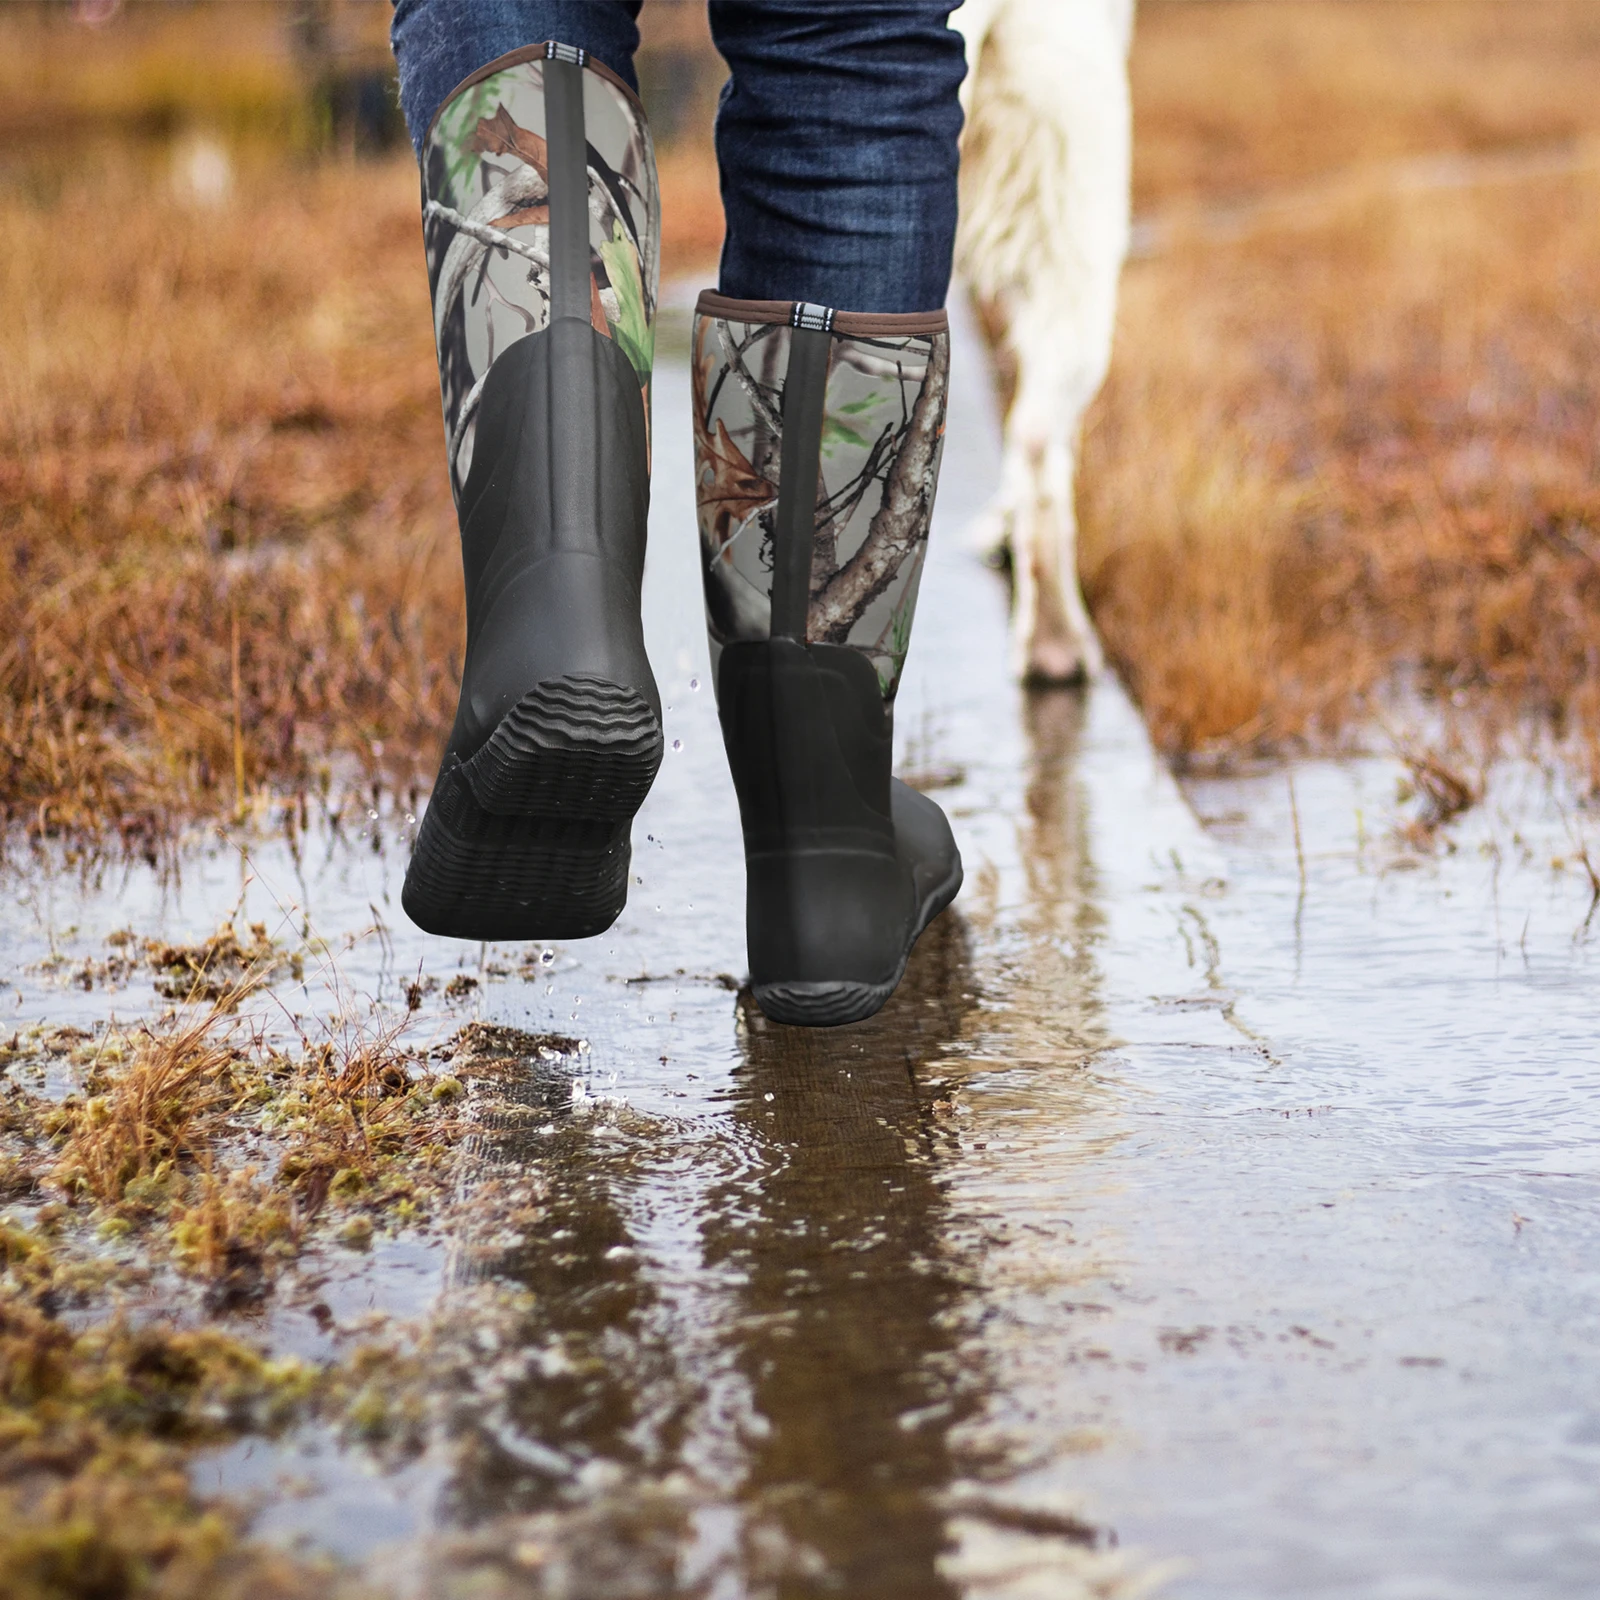 Hisea, камуфляжные мужские ботинки для рыбалки, водонепроницаемые, прочные, изолированные, резина, неопрен, уличная гадость, охотничьи ботинки для зимы, снега, дождя